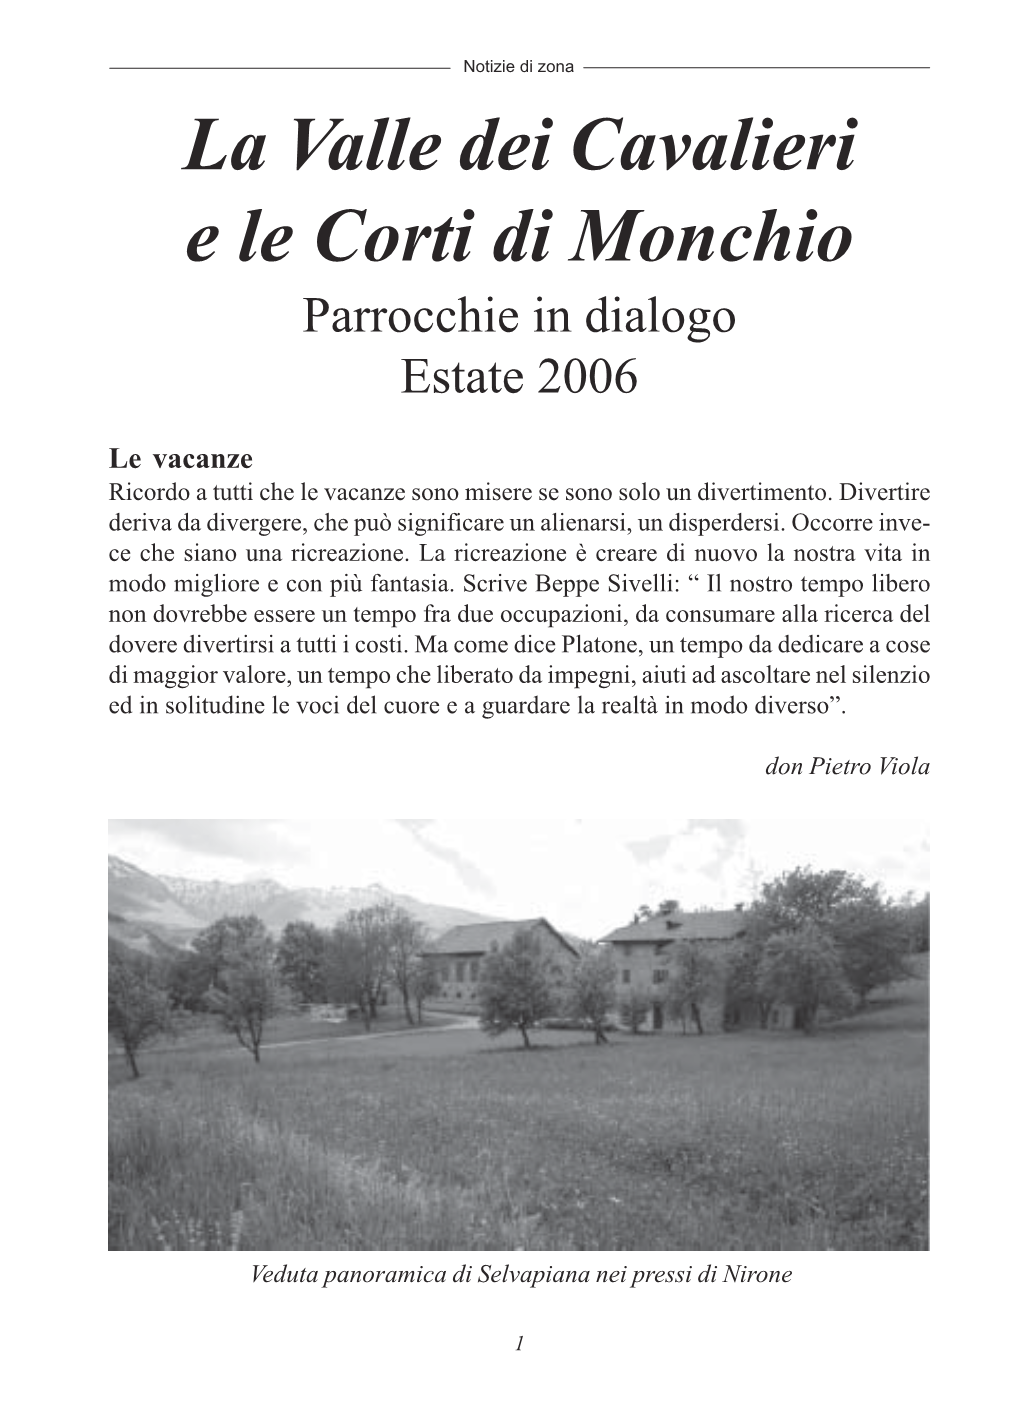 La Valle Dei Cavalieri E Le Corti Di Monchio Parrocchie in Dialogo Estate 2006